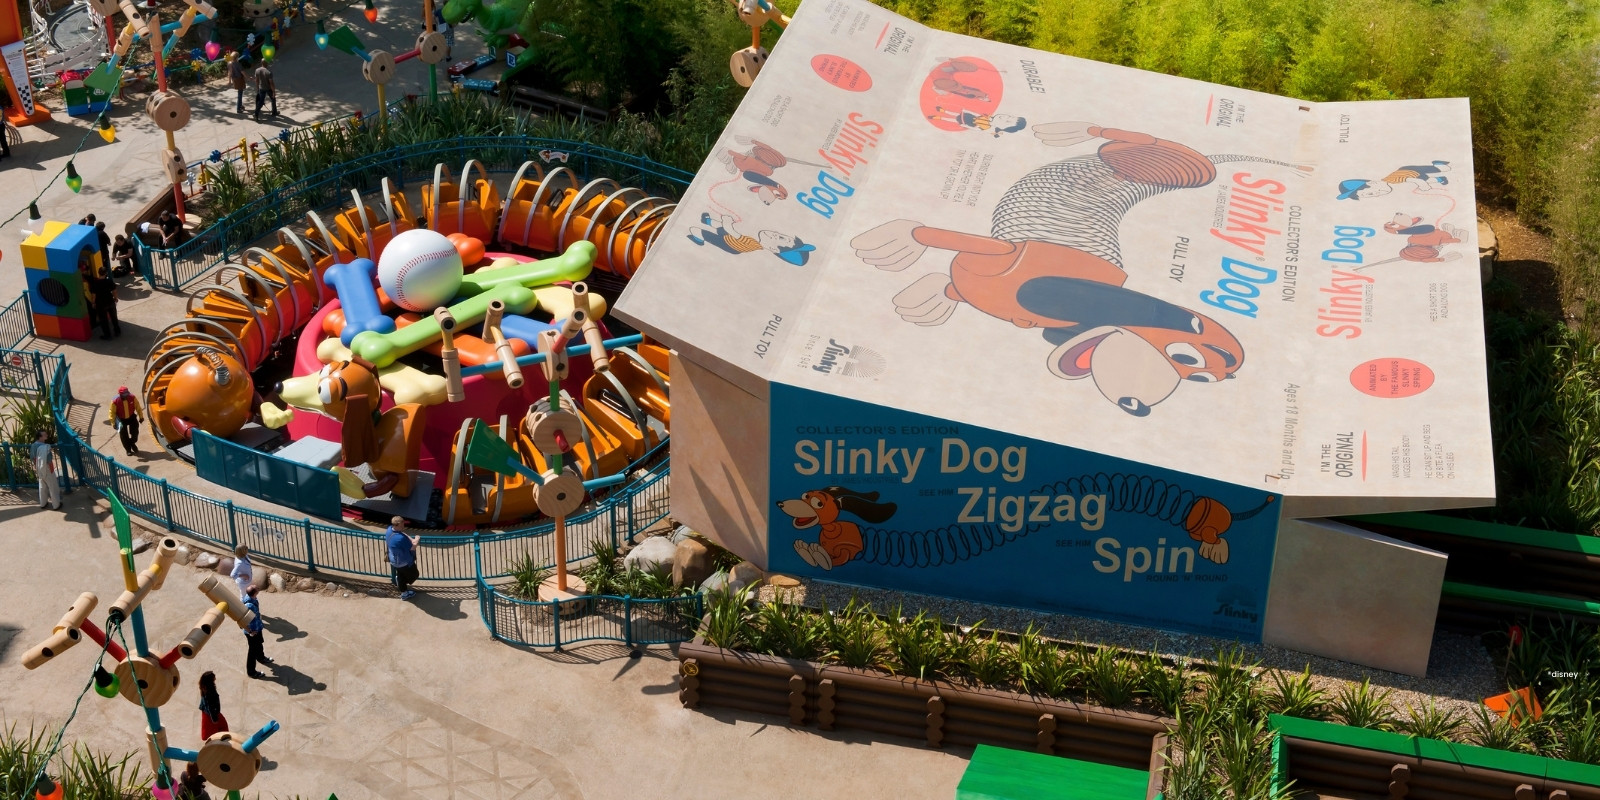 Schachtel mit braunem Spielzeughund Slinky Dog oben drauf und Slinky-Attraktion davor